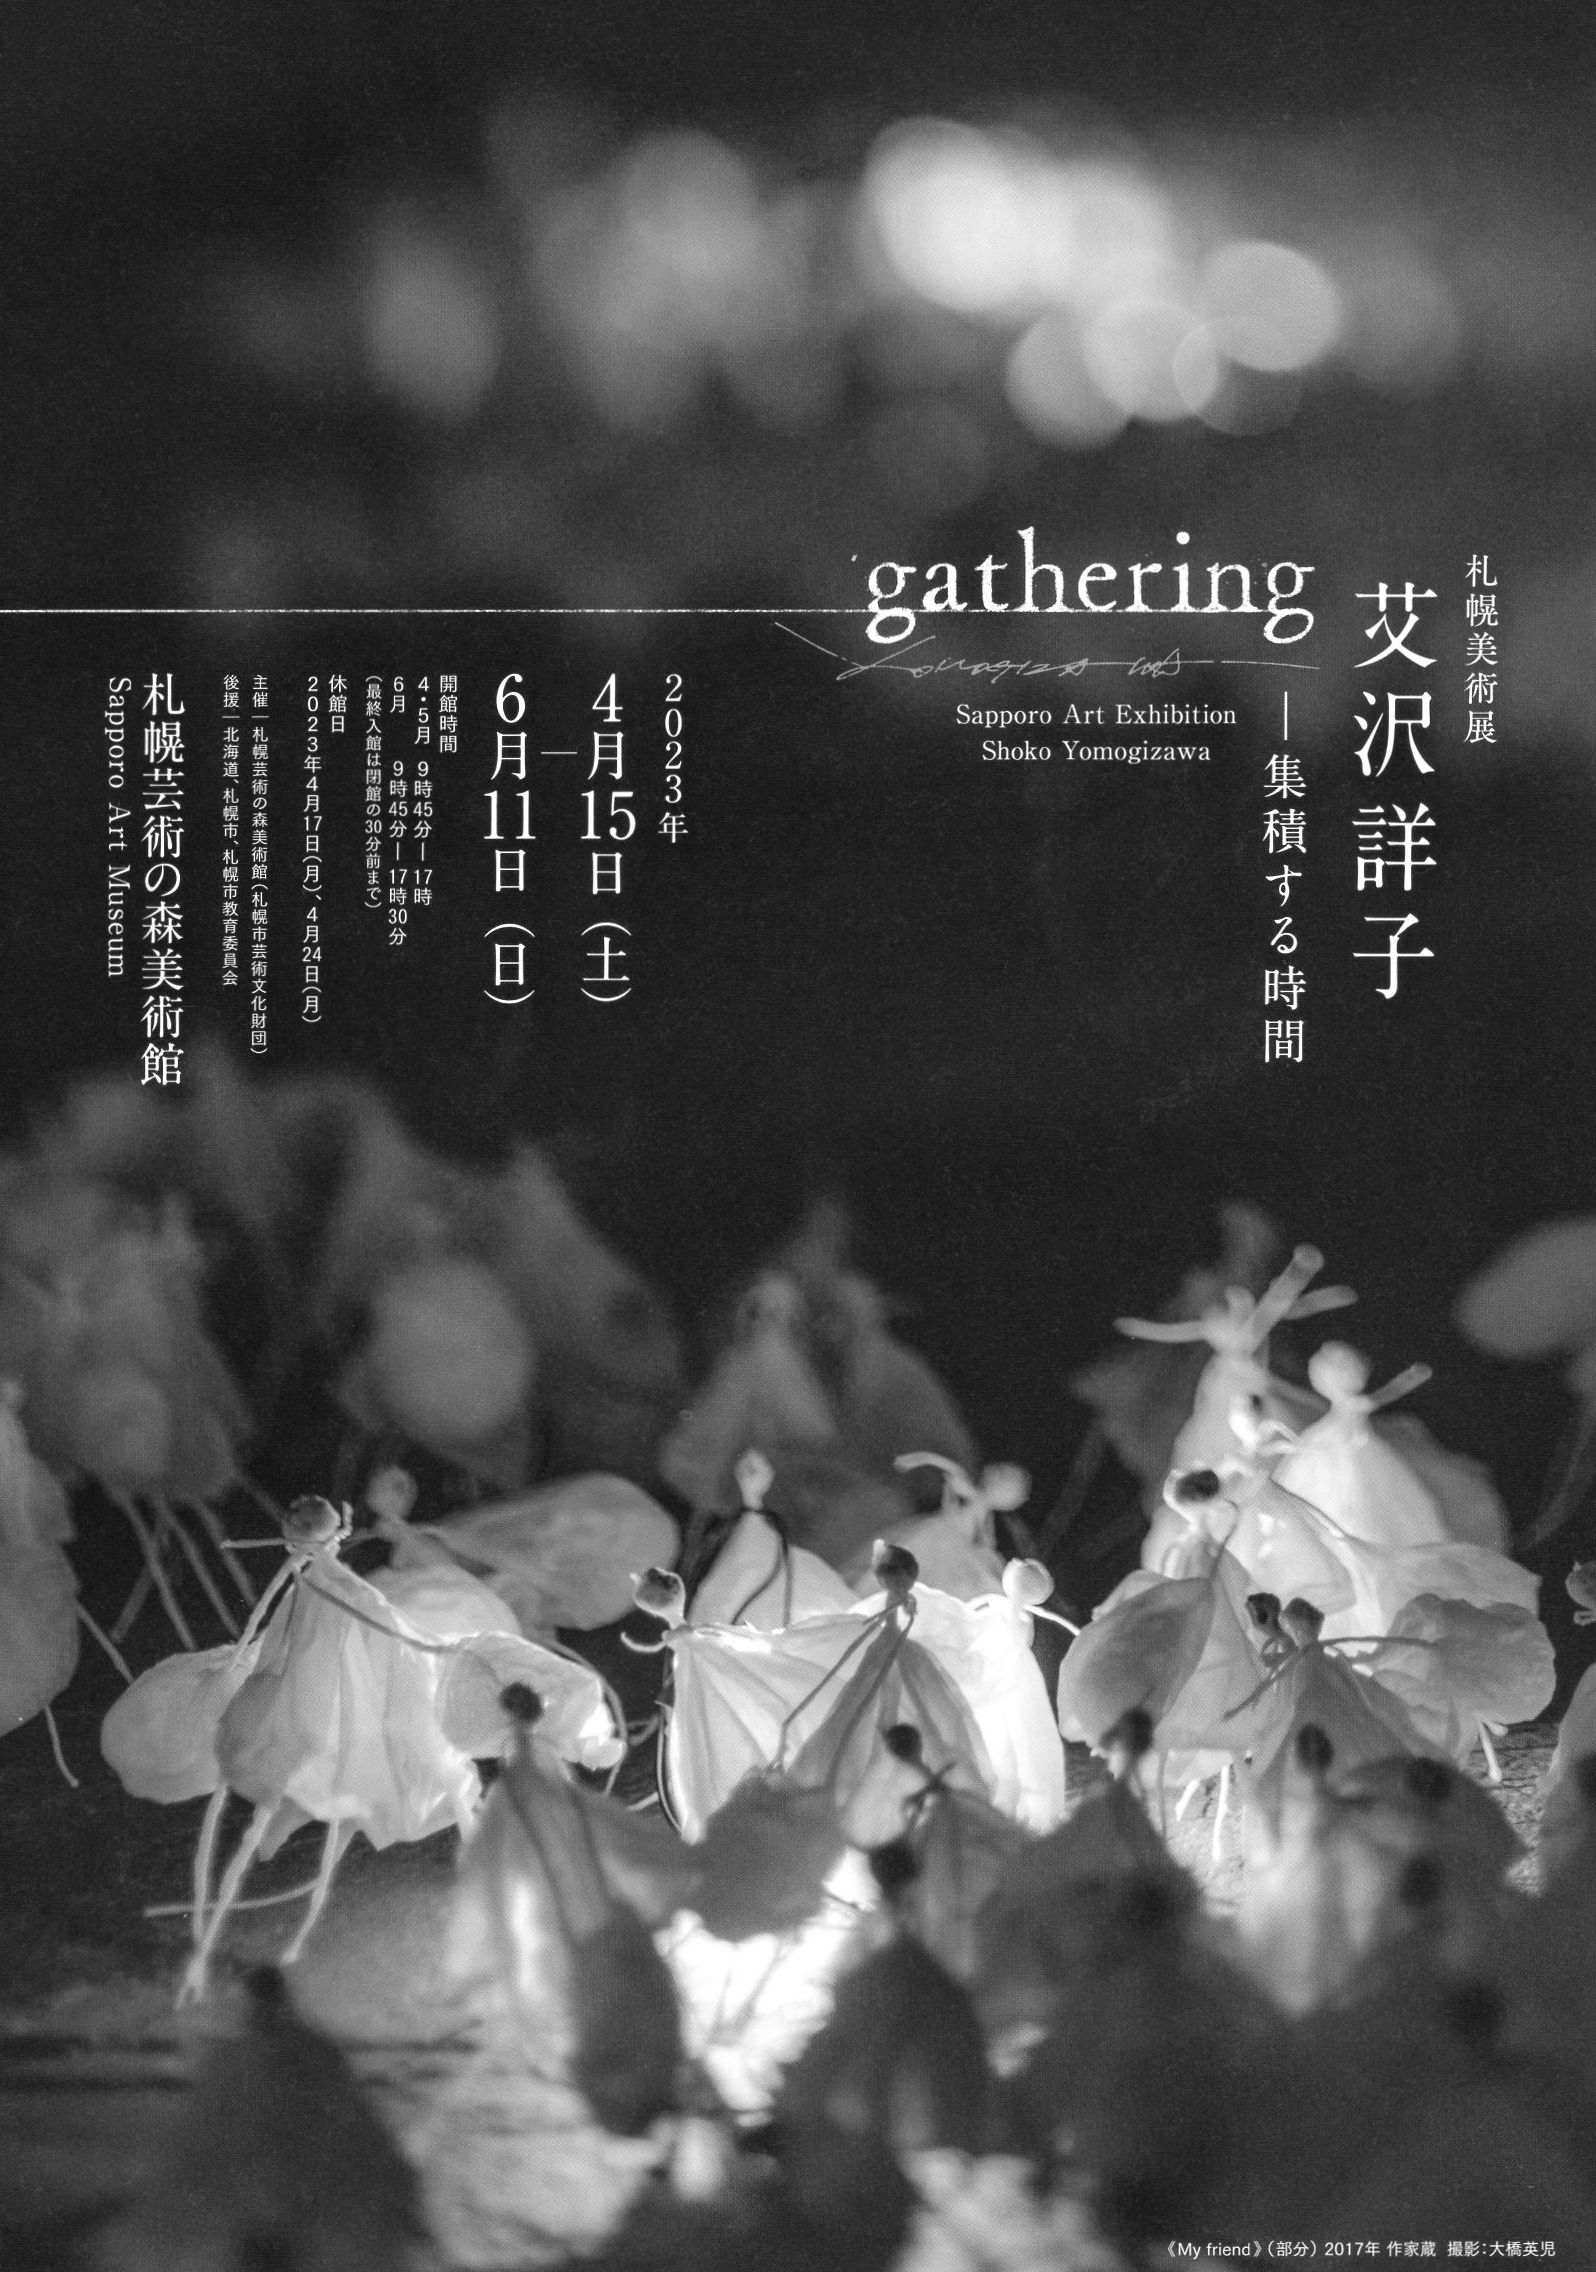 札幌美術展 艾沢詳子 gathering─集積する時間 イメージ画像